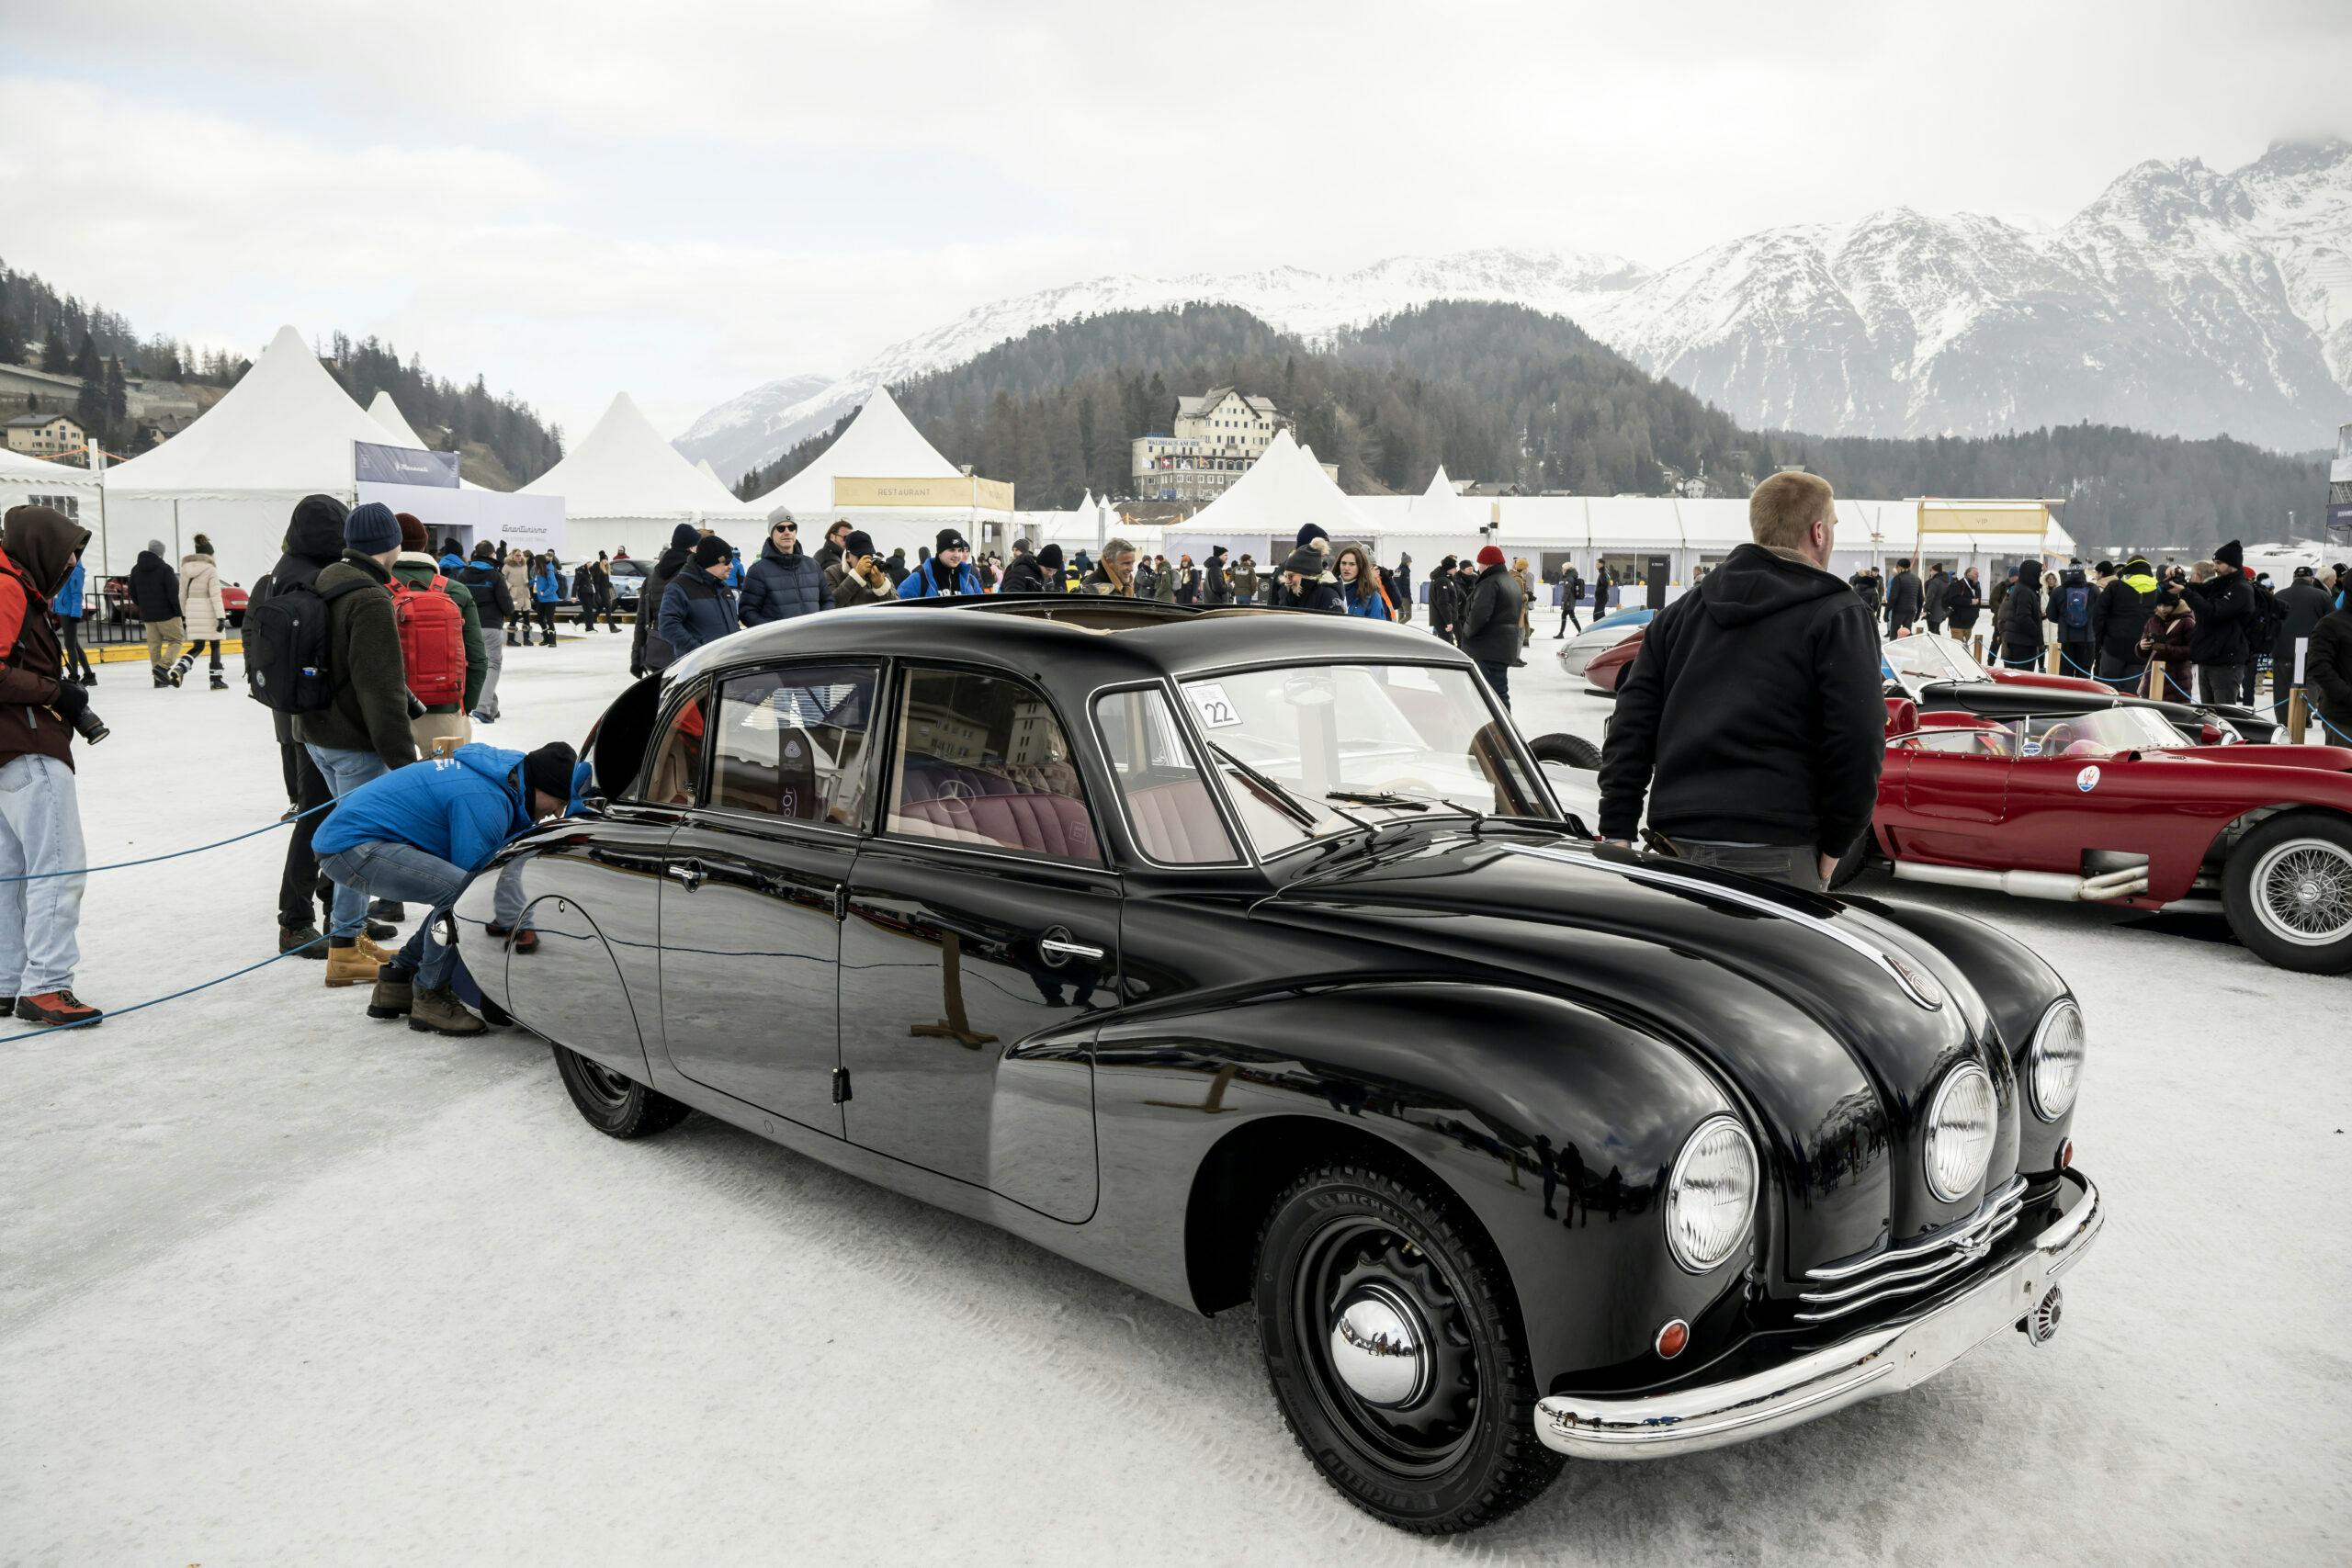 1947 Tatra 87 at The Ice St Moritz